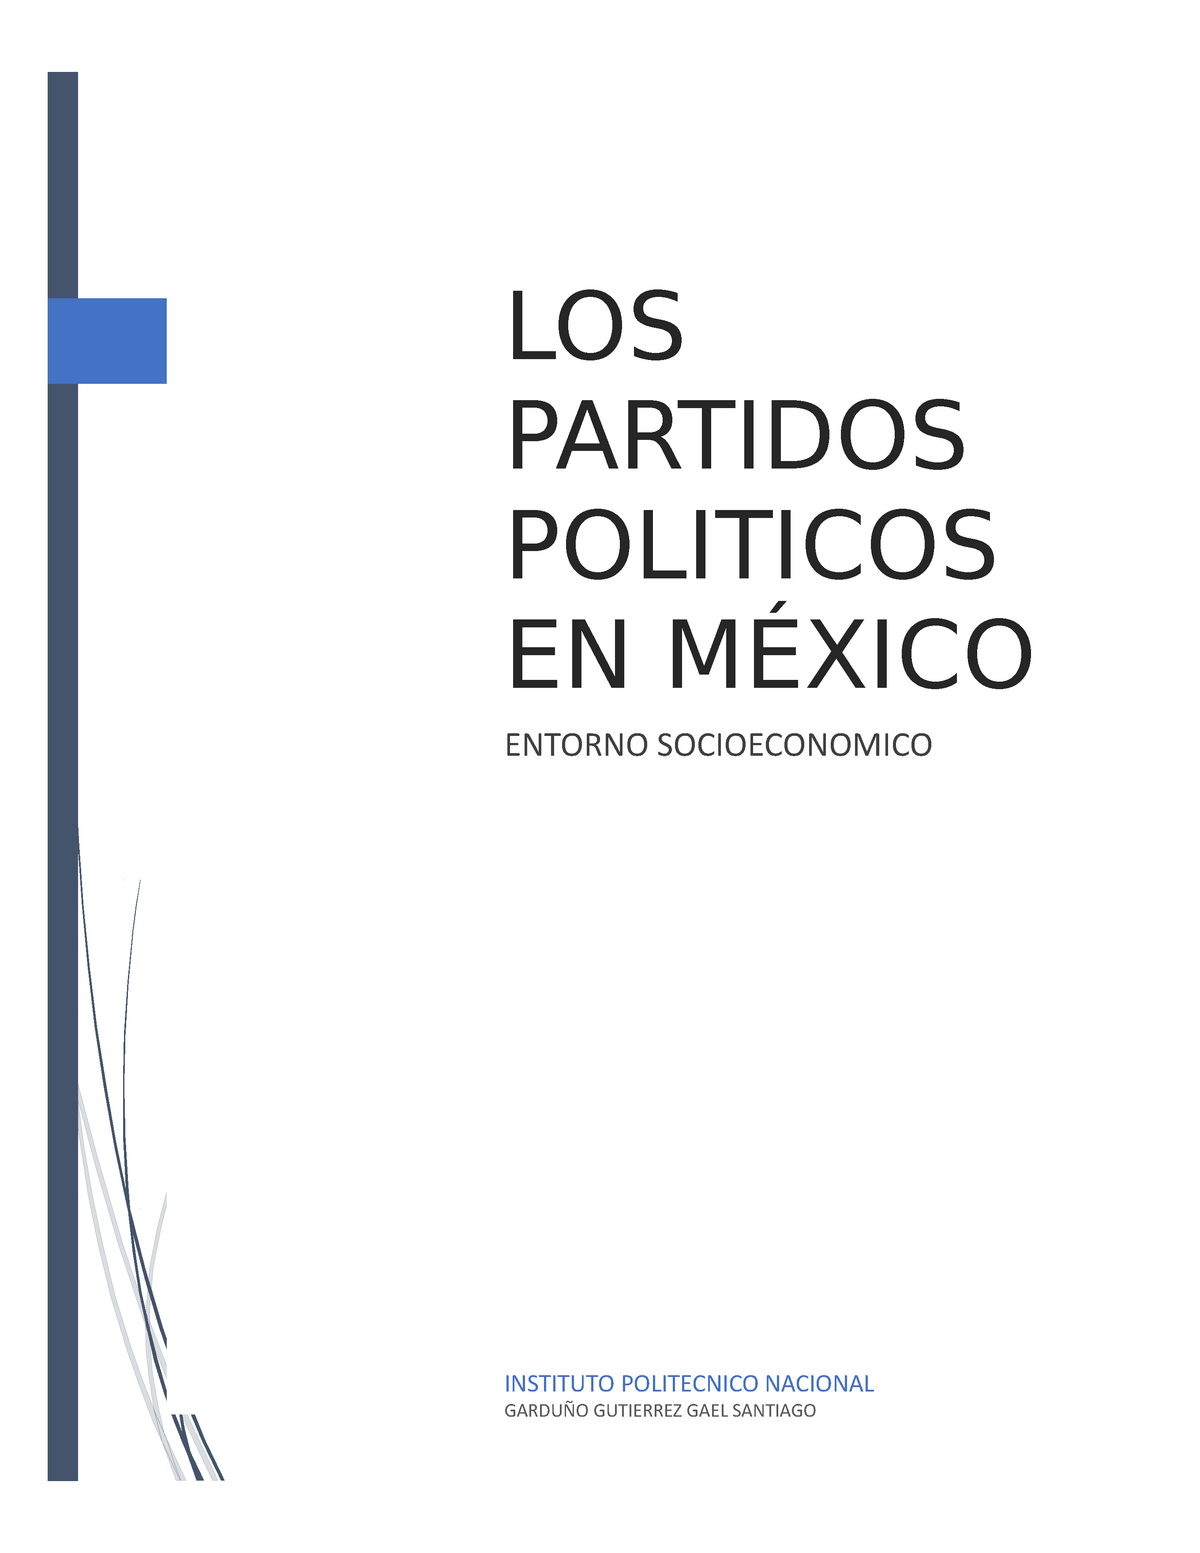 Mapa Conceptual De Los Partidos Politicos De Mexico 7 12 Instituto Politecnico Nacional 7849